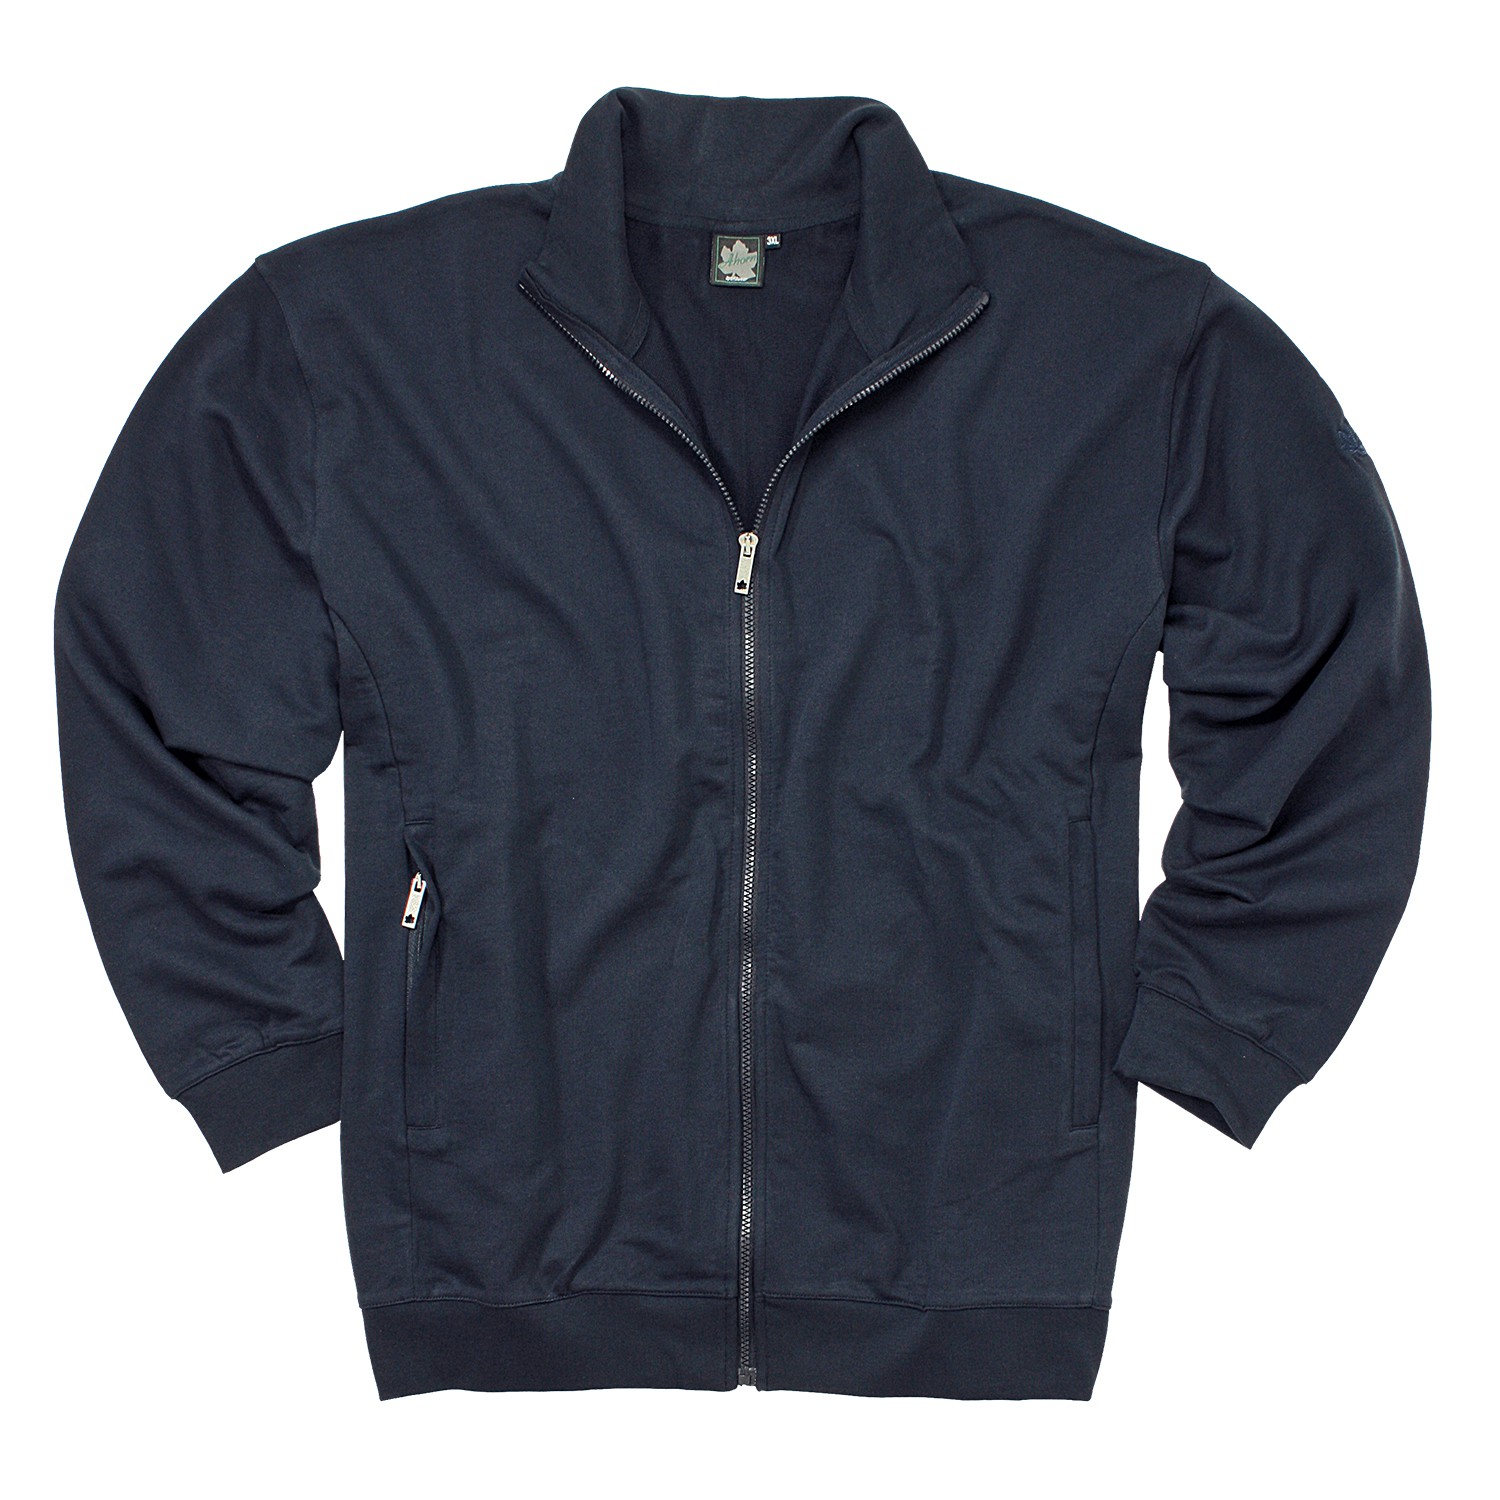 Sweat zippé bleu foncé by Ahorn Sportswear en grandes tailles jusqu'au 10XL